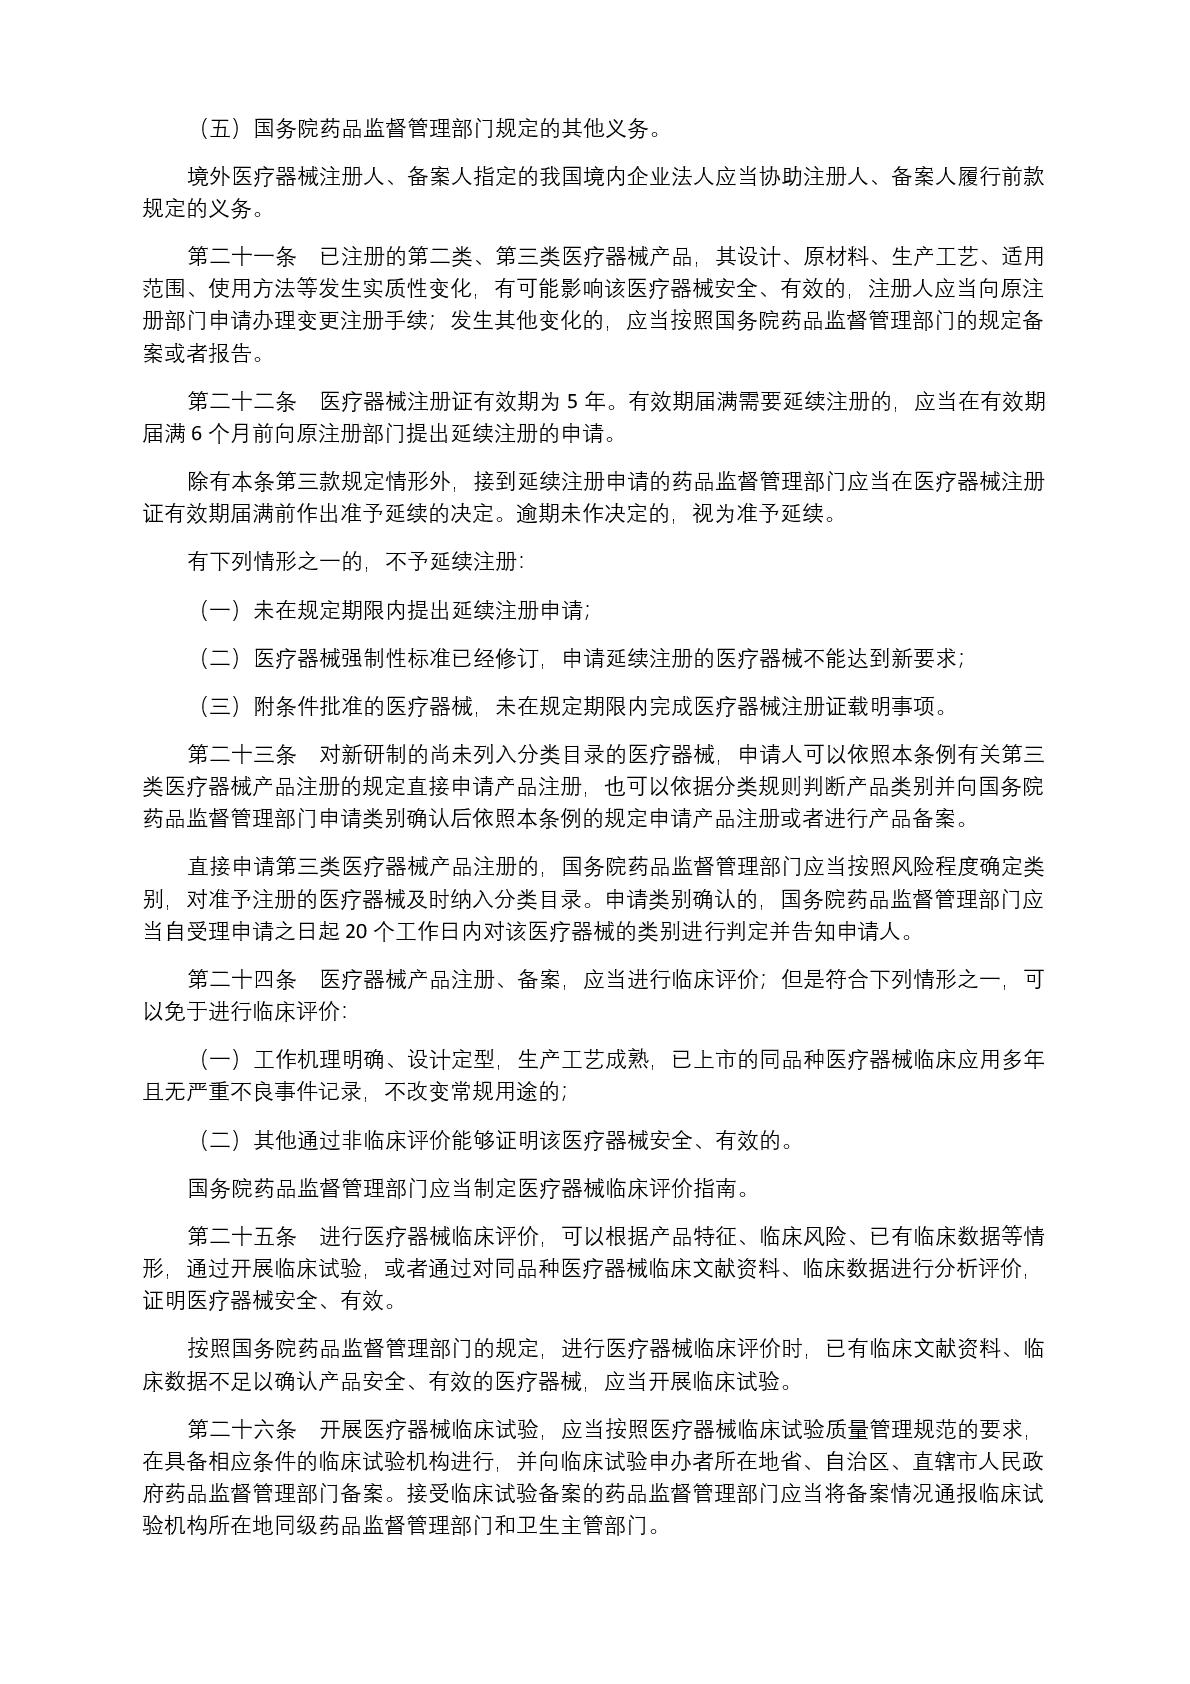 中华人民共和国国务院令第739号(1) (1)-005.jpg